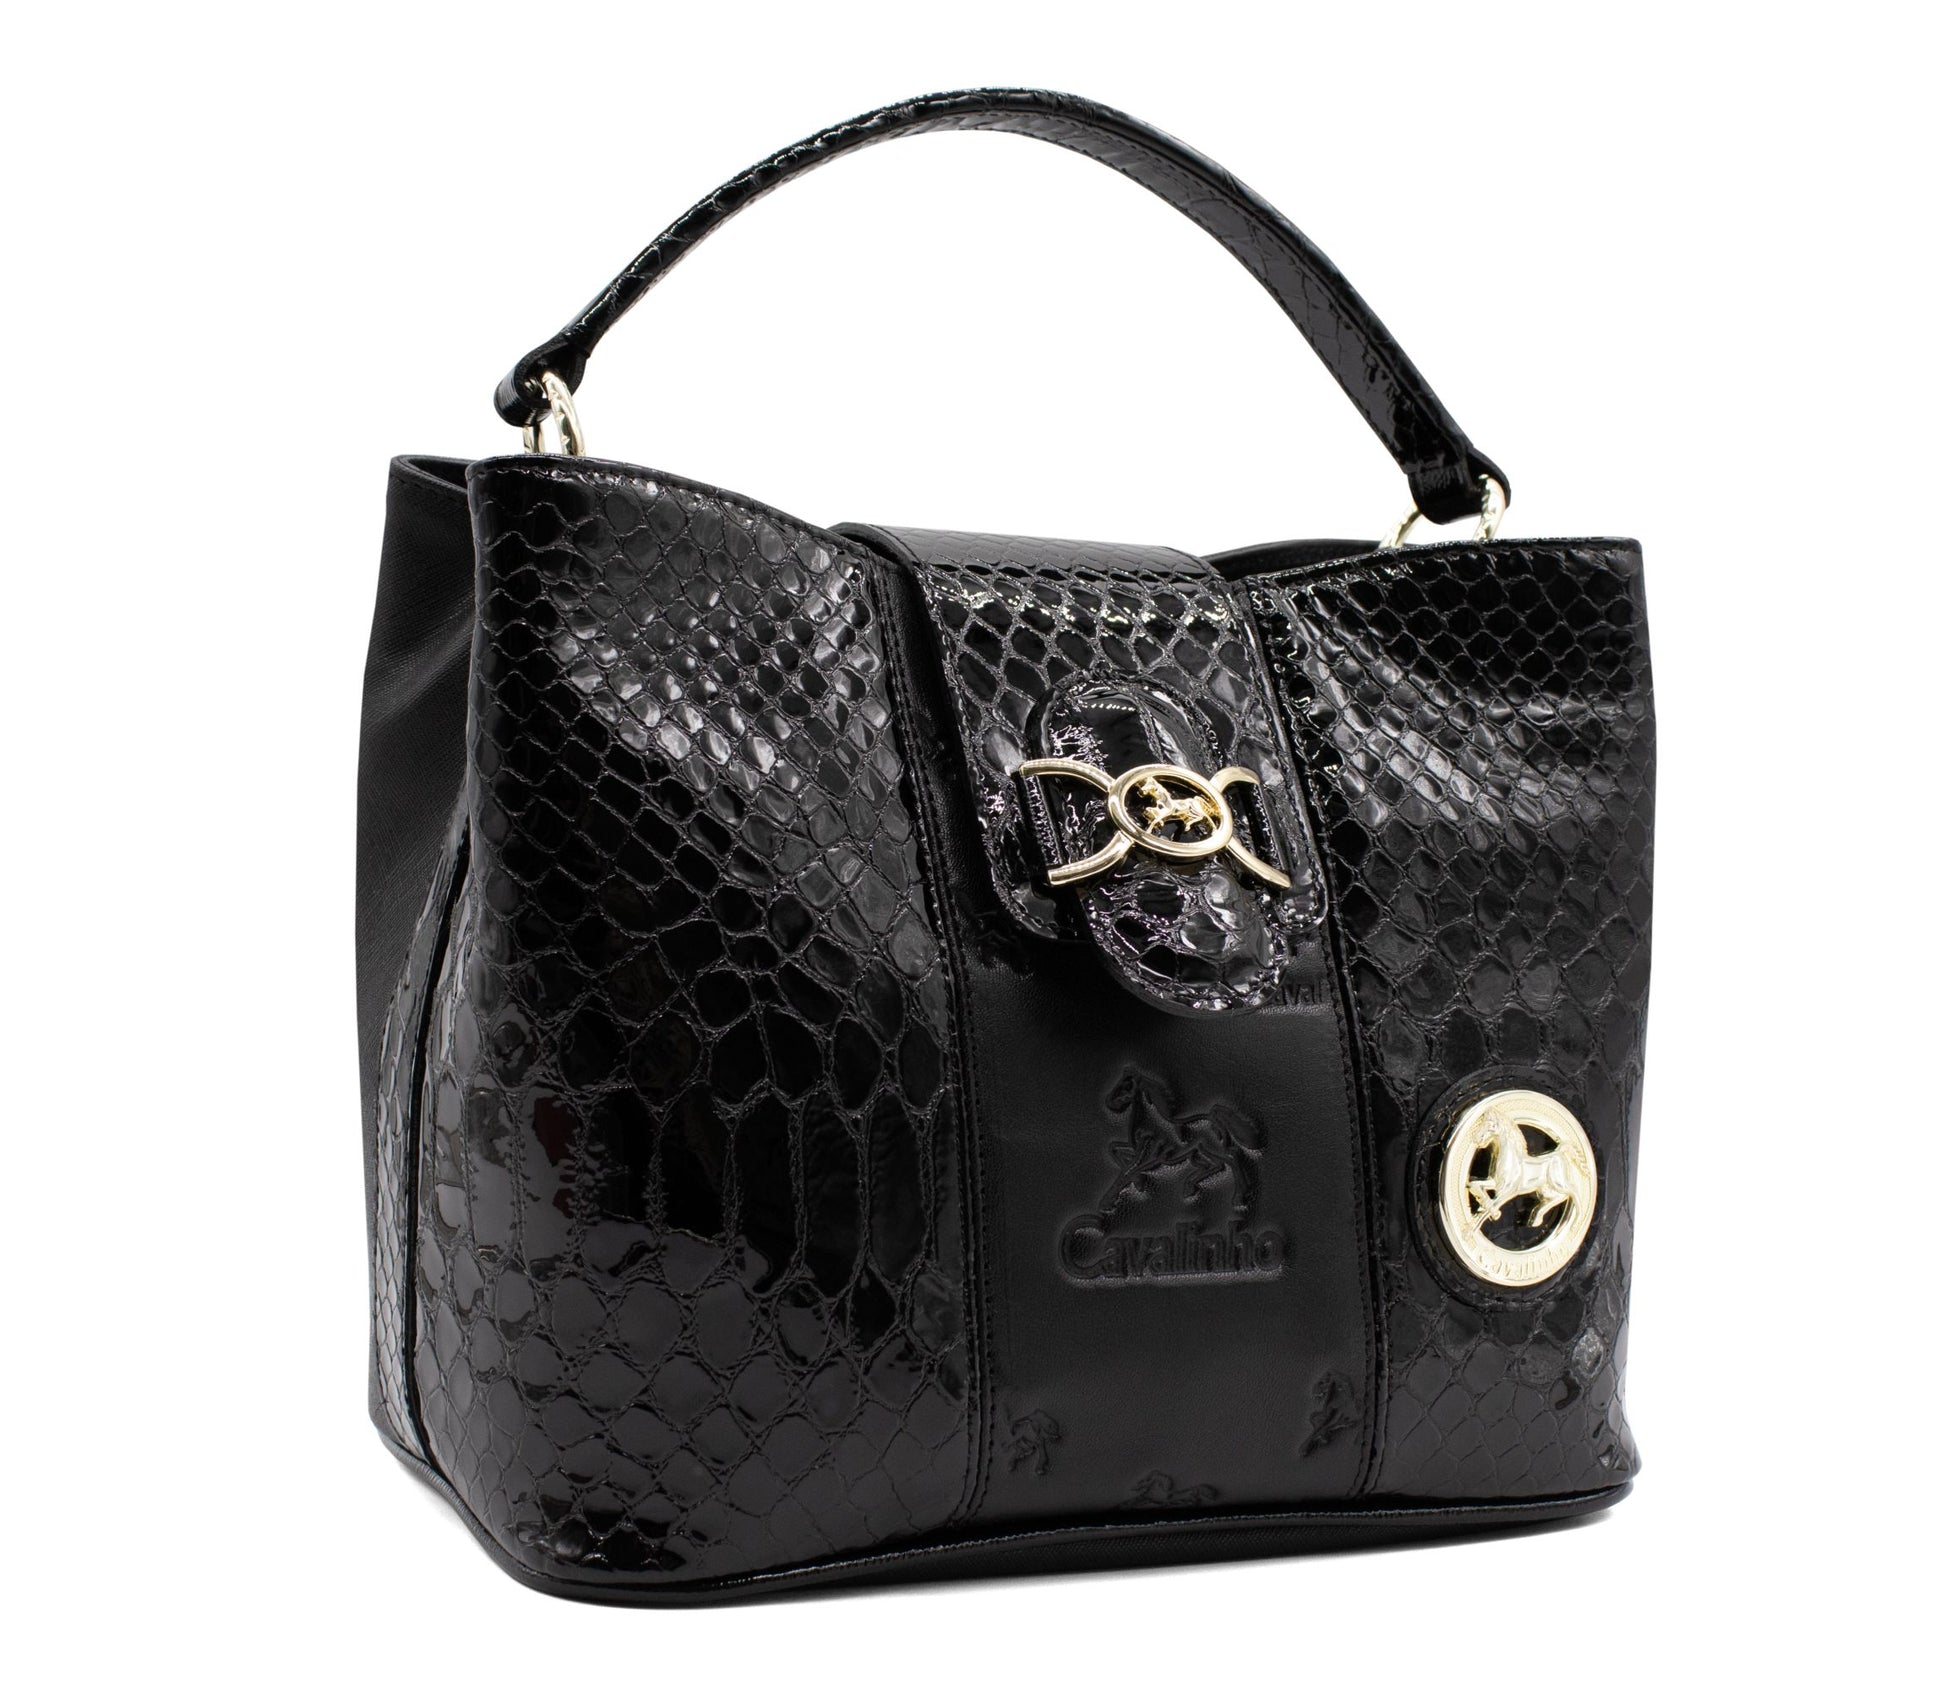 Cavalinho Honor Handbag - Black - 18190429.01_2